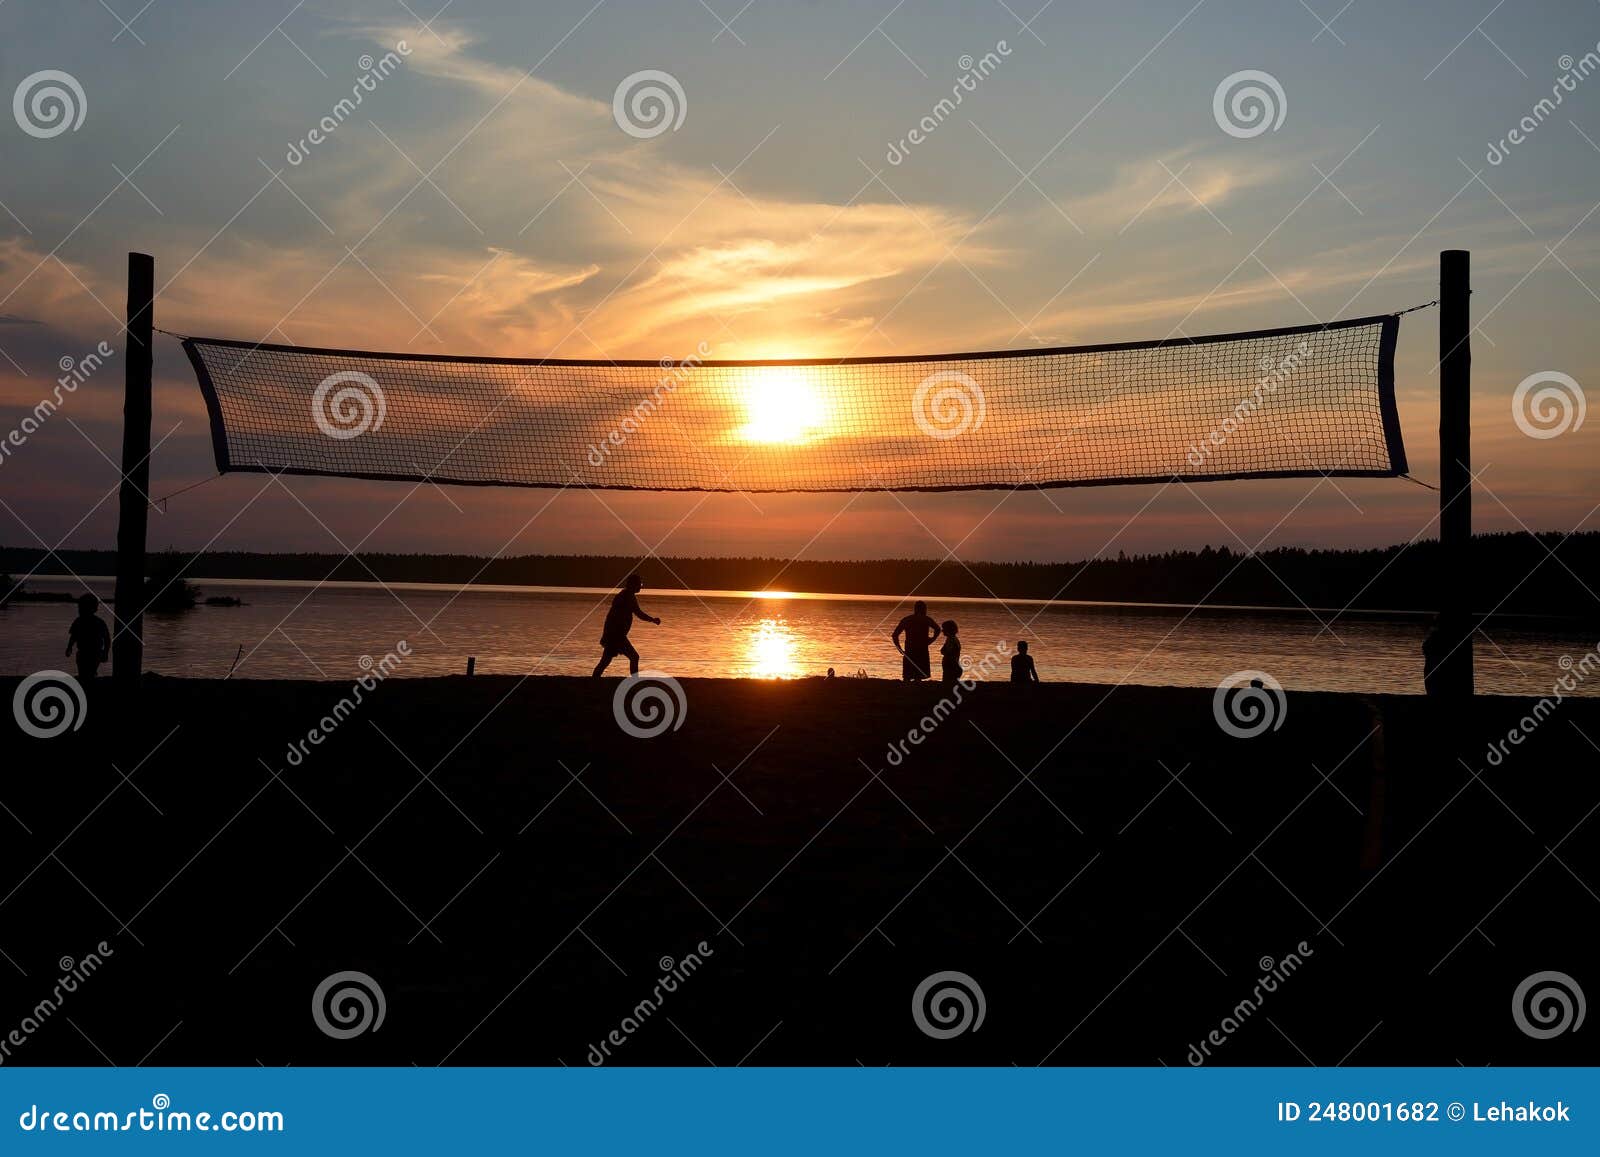 Volleyball Mesh at Krasavitsa Lake, Zelenogorsk, Russia Stock Photo